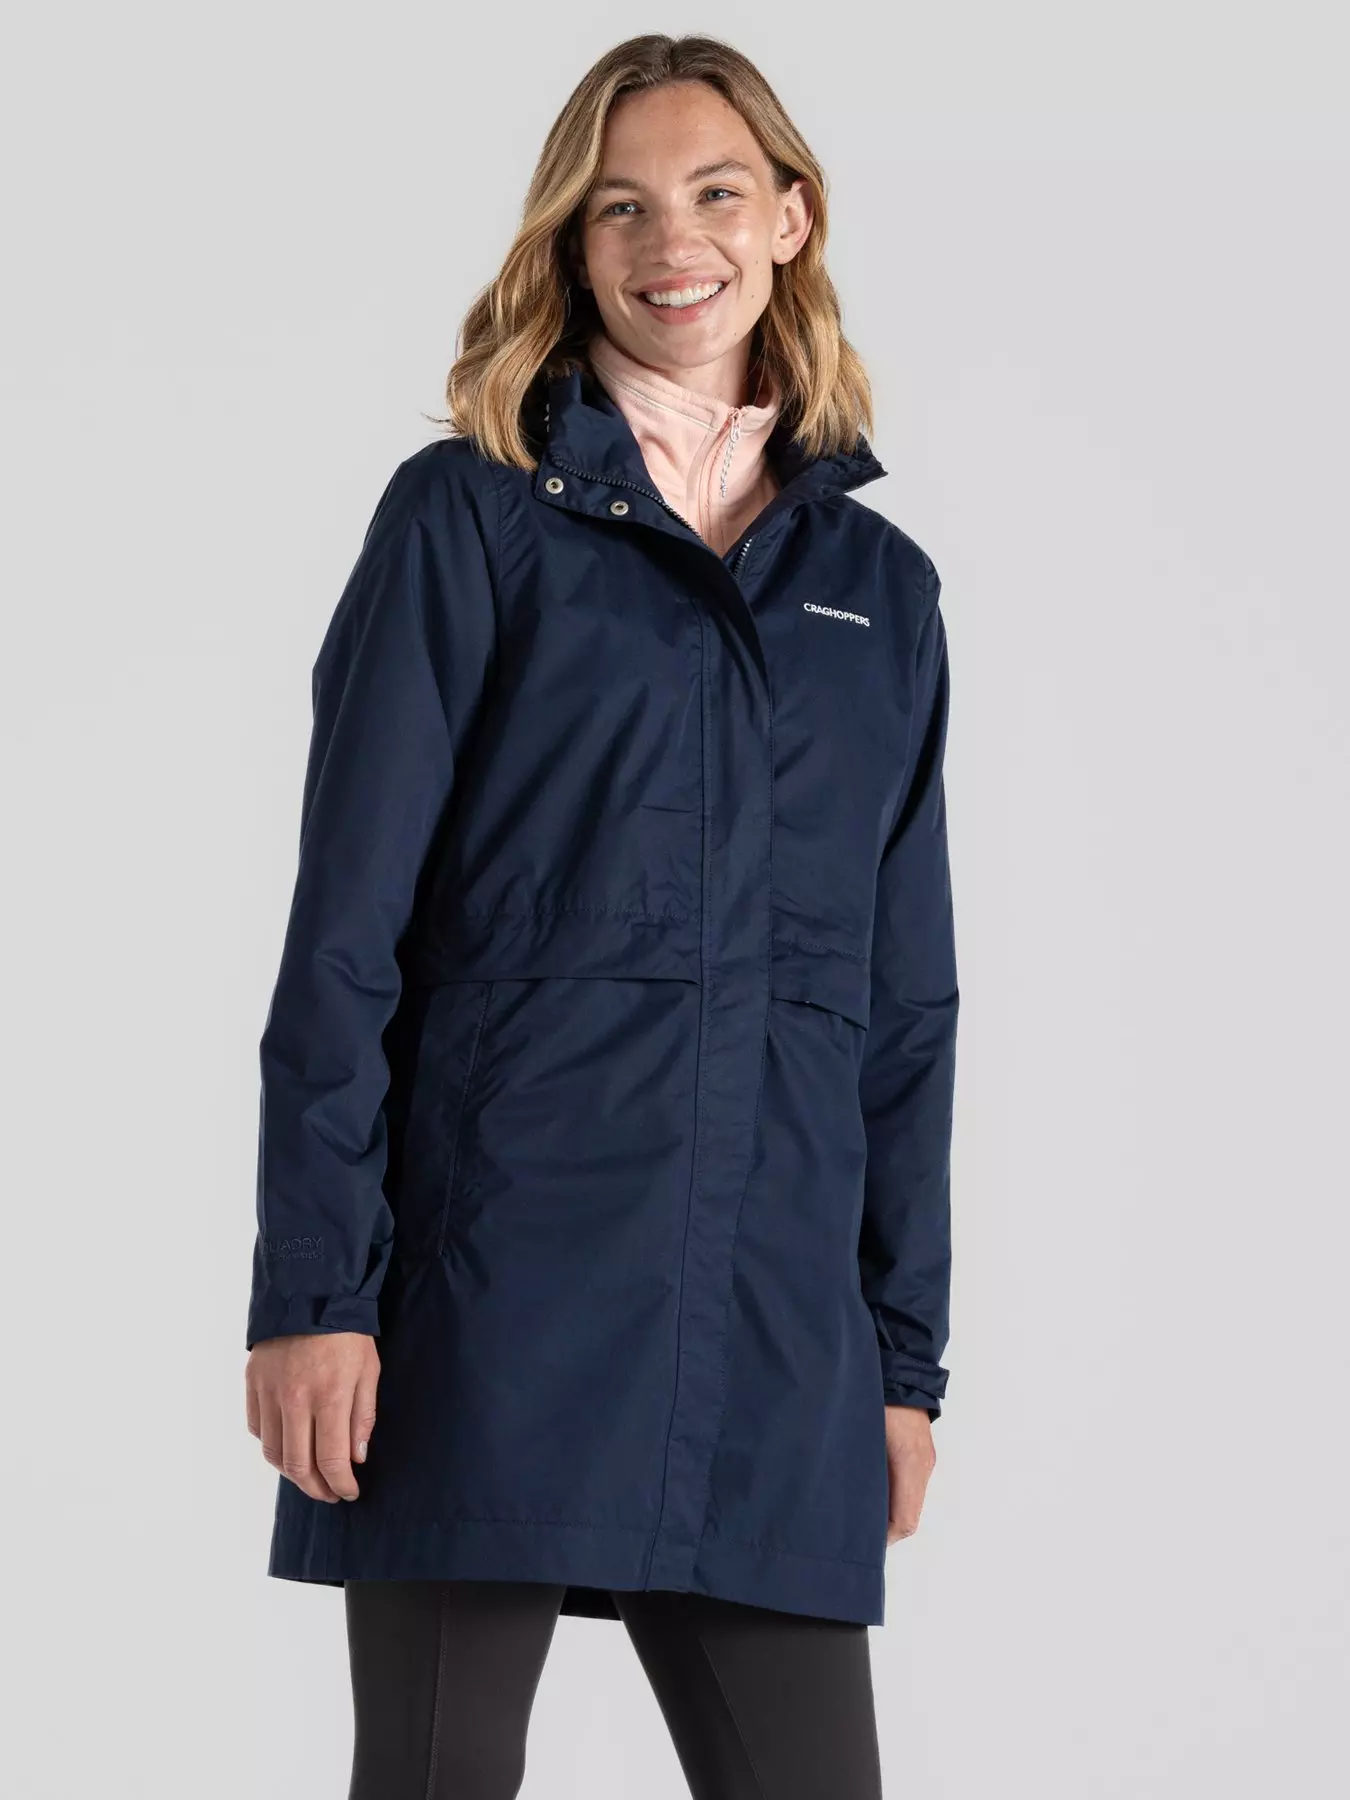 DKNY Women's Hooded 2-Pocket Easy Sportswear Jacket, Thyme, Medium